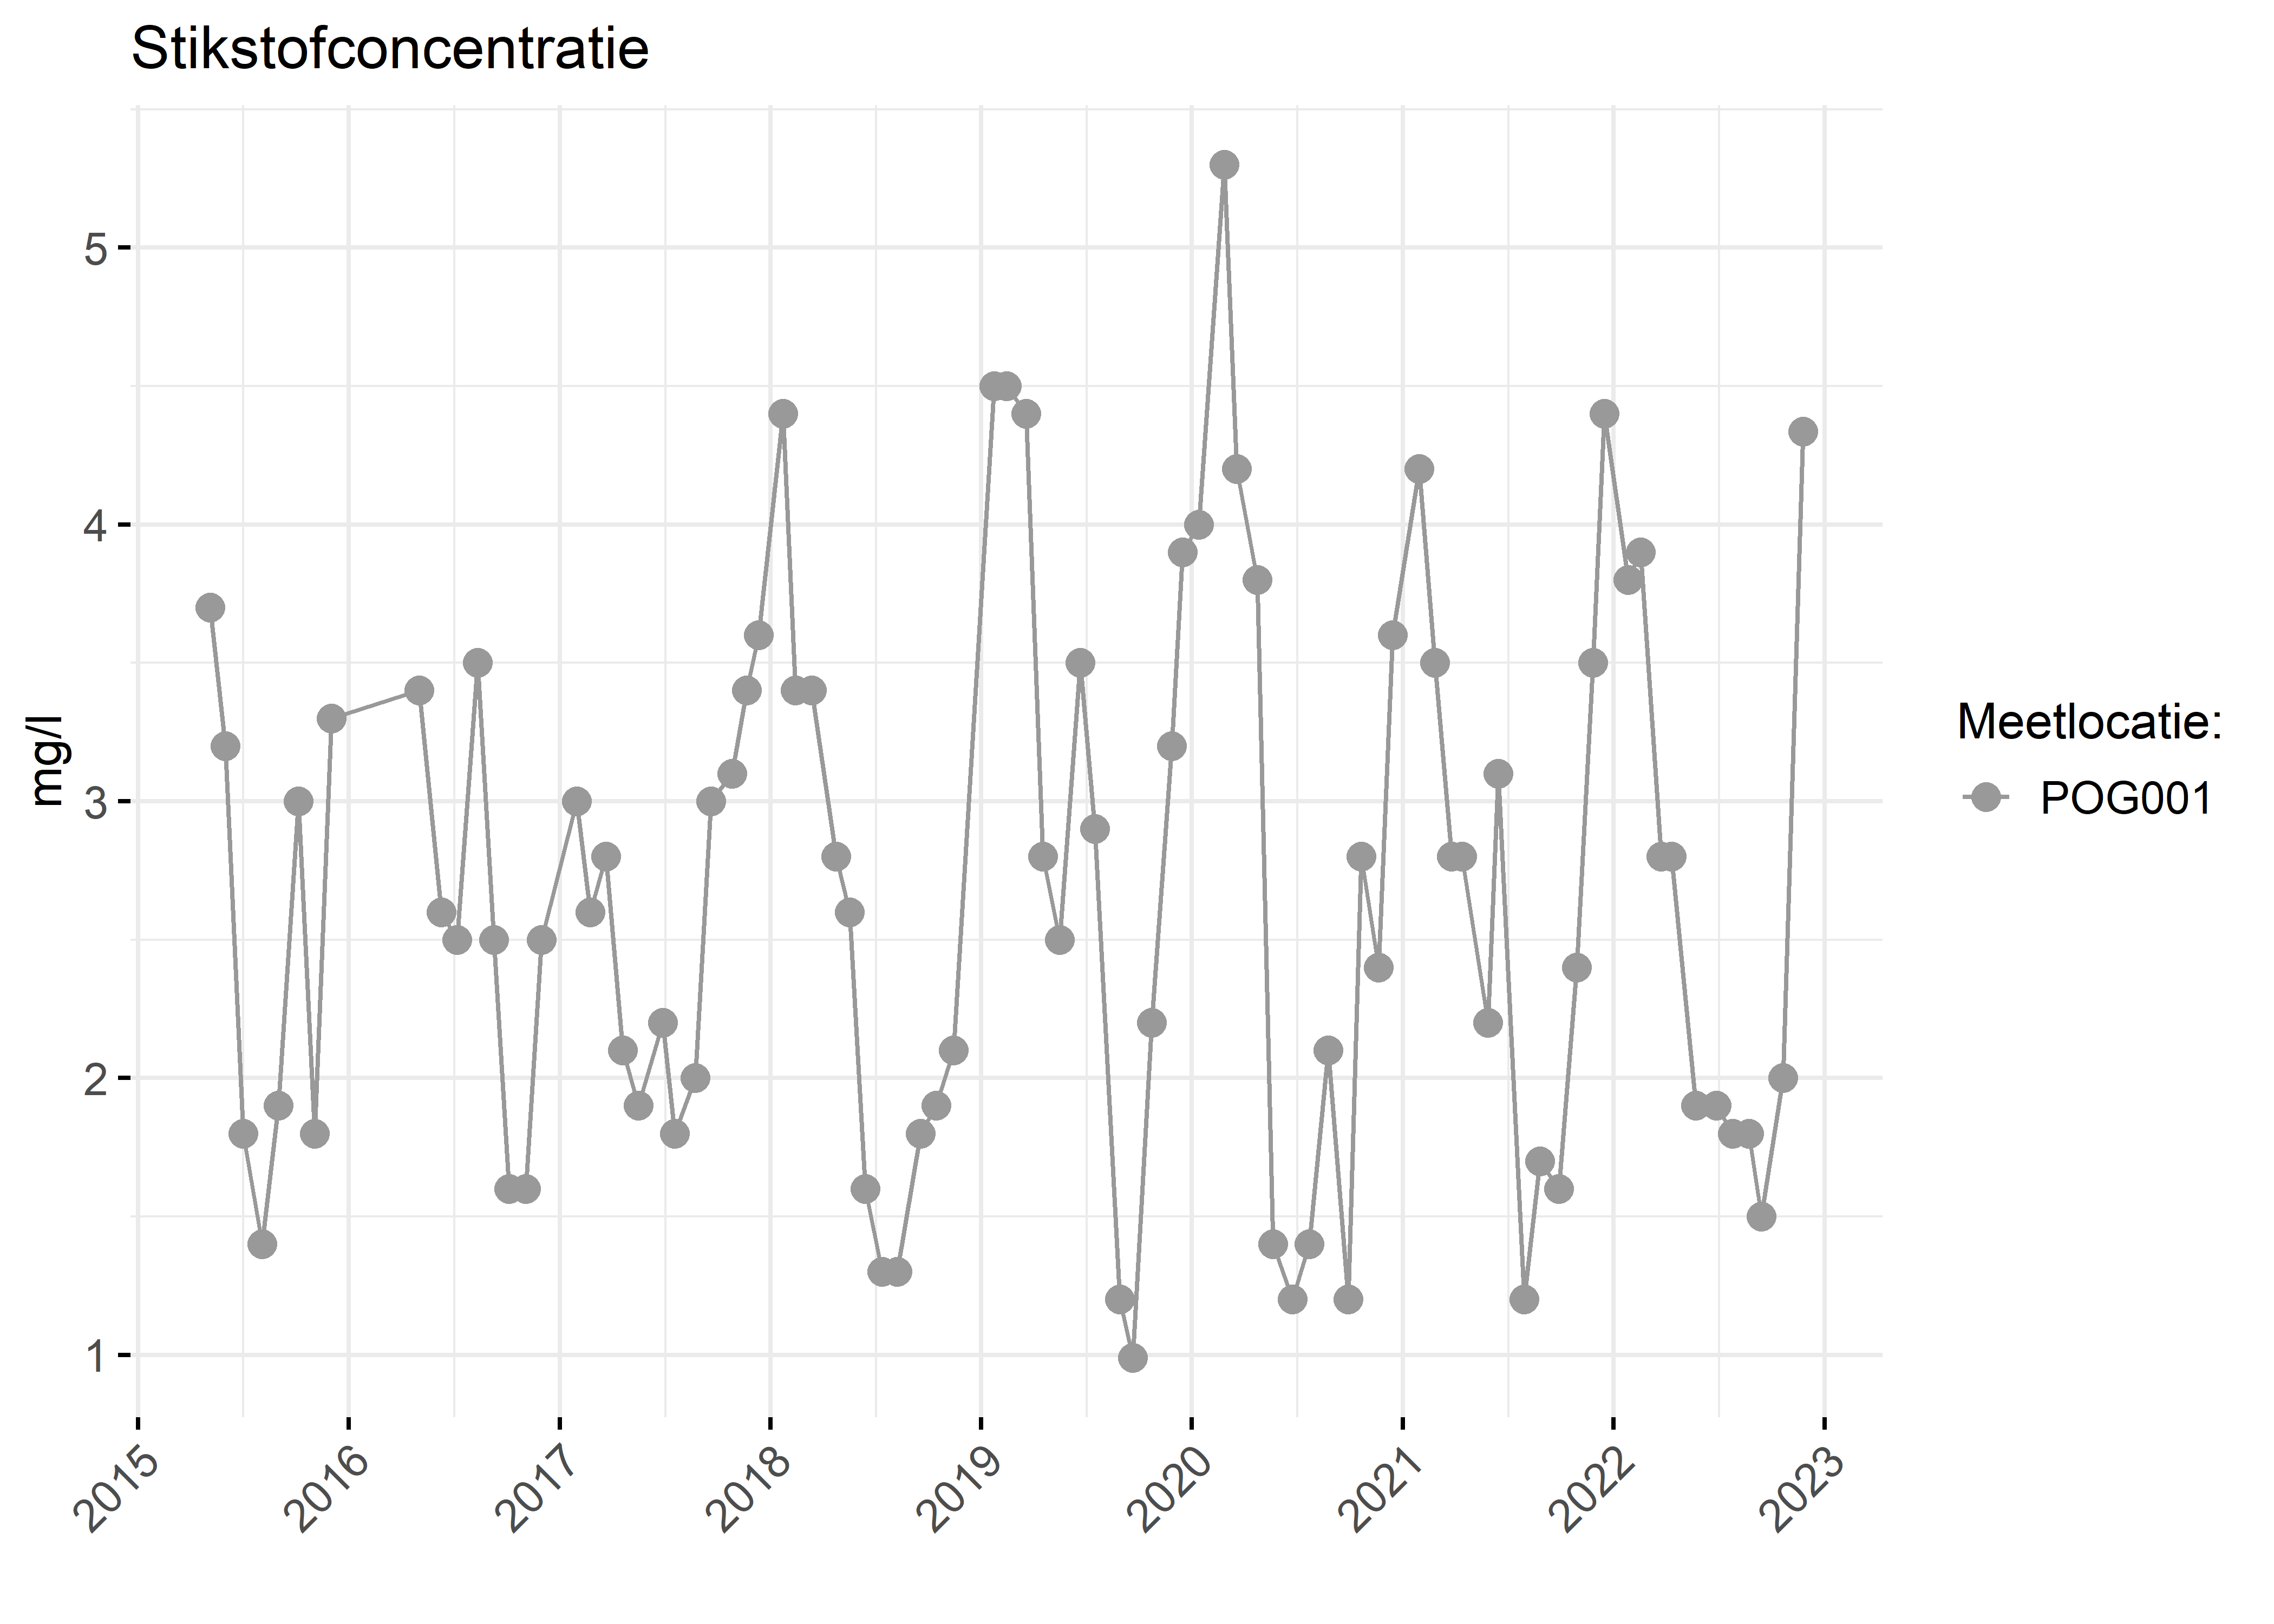 Figure 2: Verloop van stikstofconcentraties (mg/l) in de tijd.